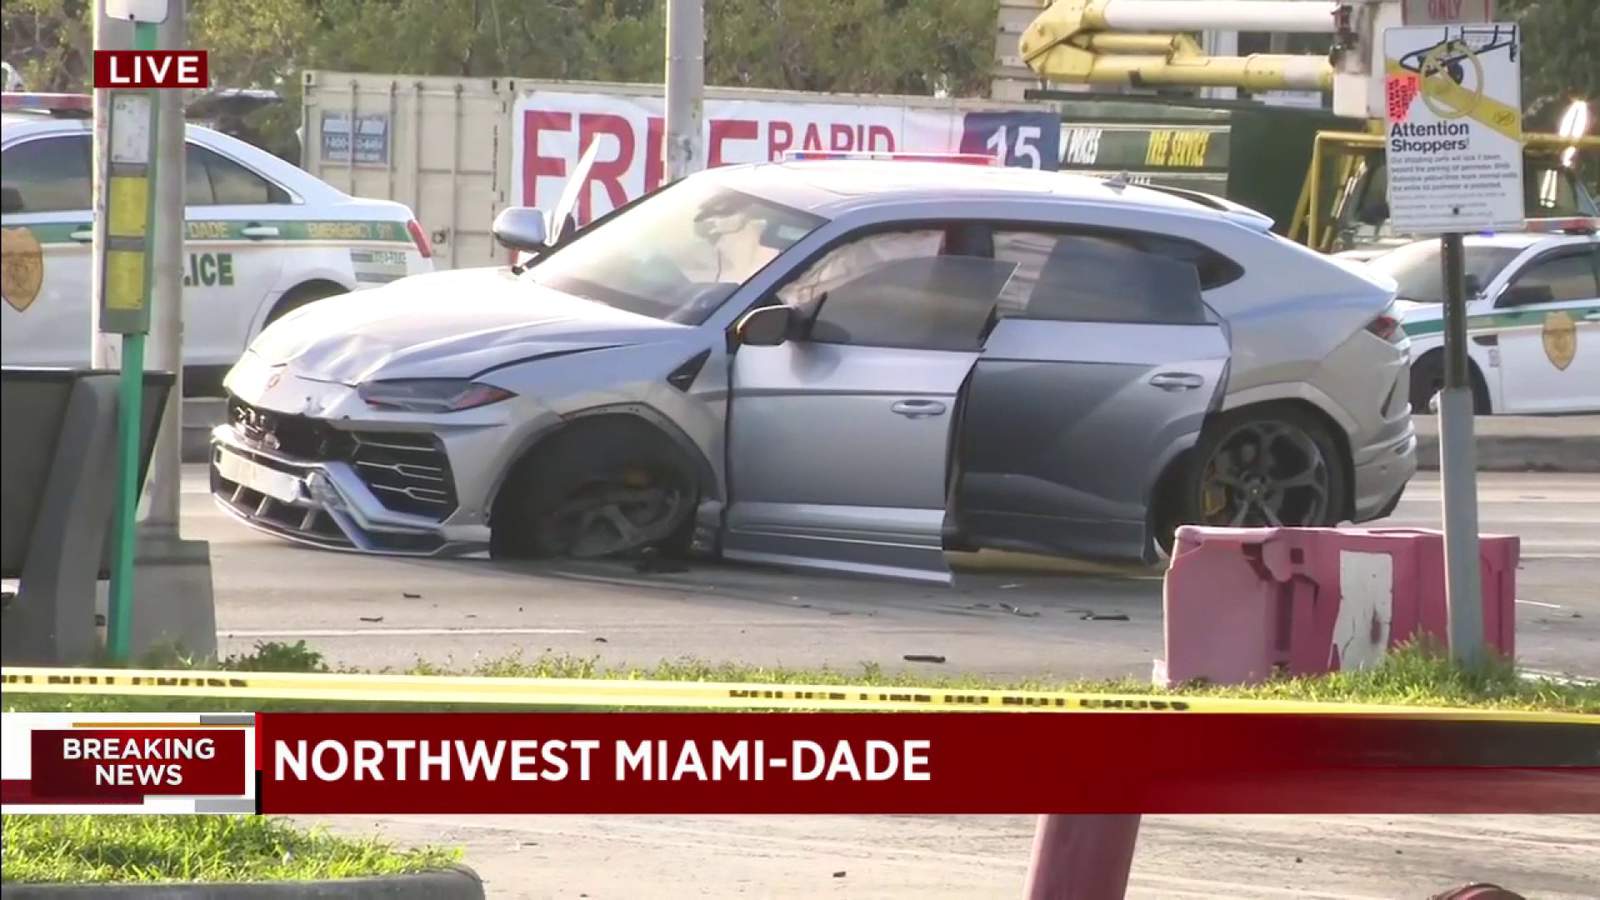 Camioneta Lamborghini se estrella en el noroeste de Miami-Dade, puede haber estado huyendo de otro accidente